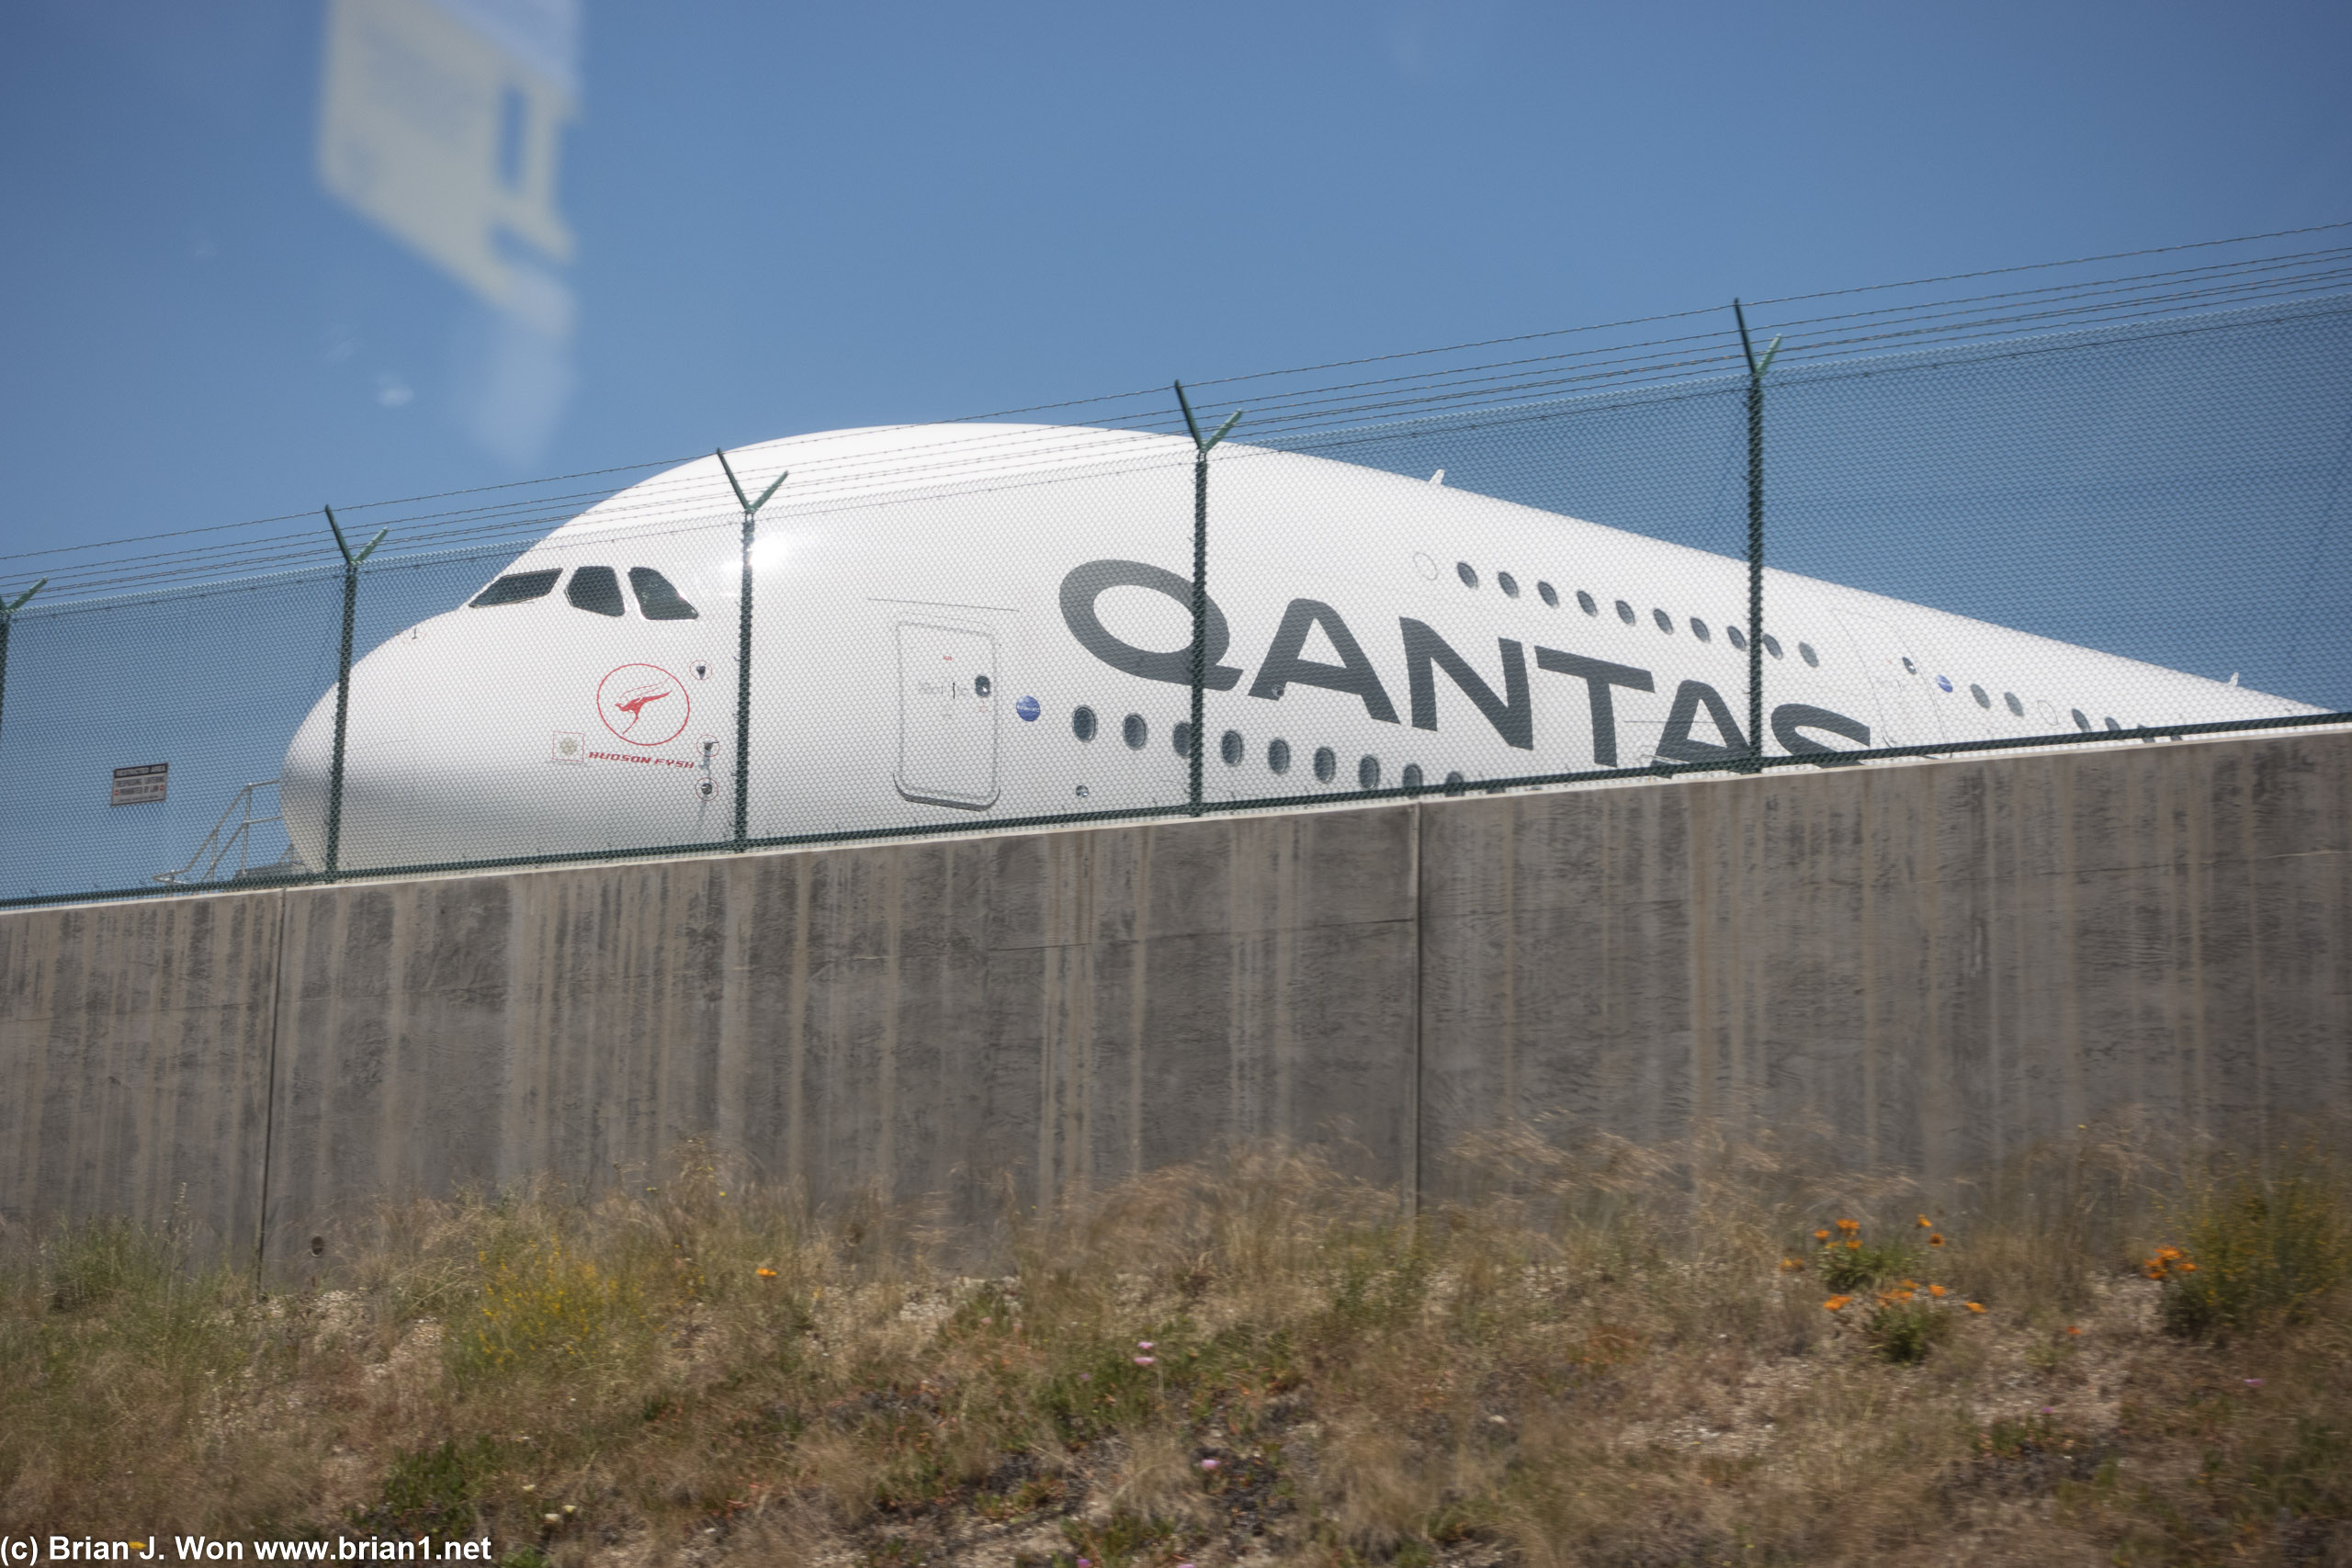 Qantas Airbus A380-800 parked at LAX.